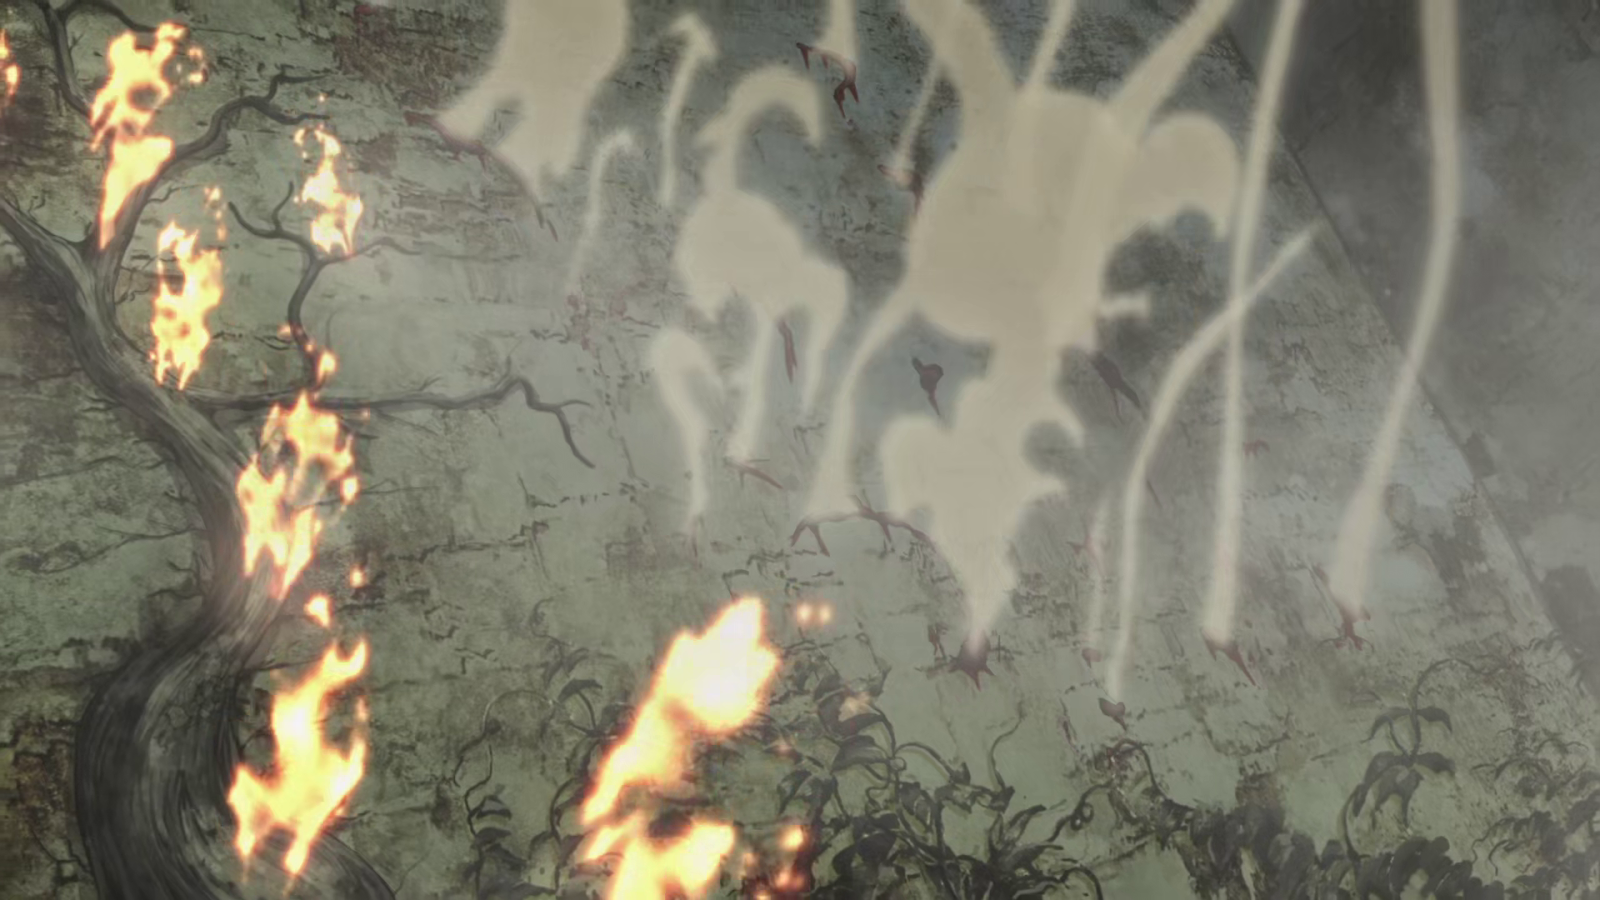 RedQStudios: Attack on Titan (Shingeki no Kyojin)